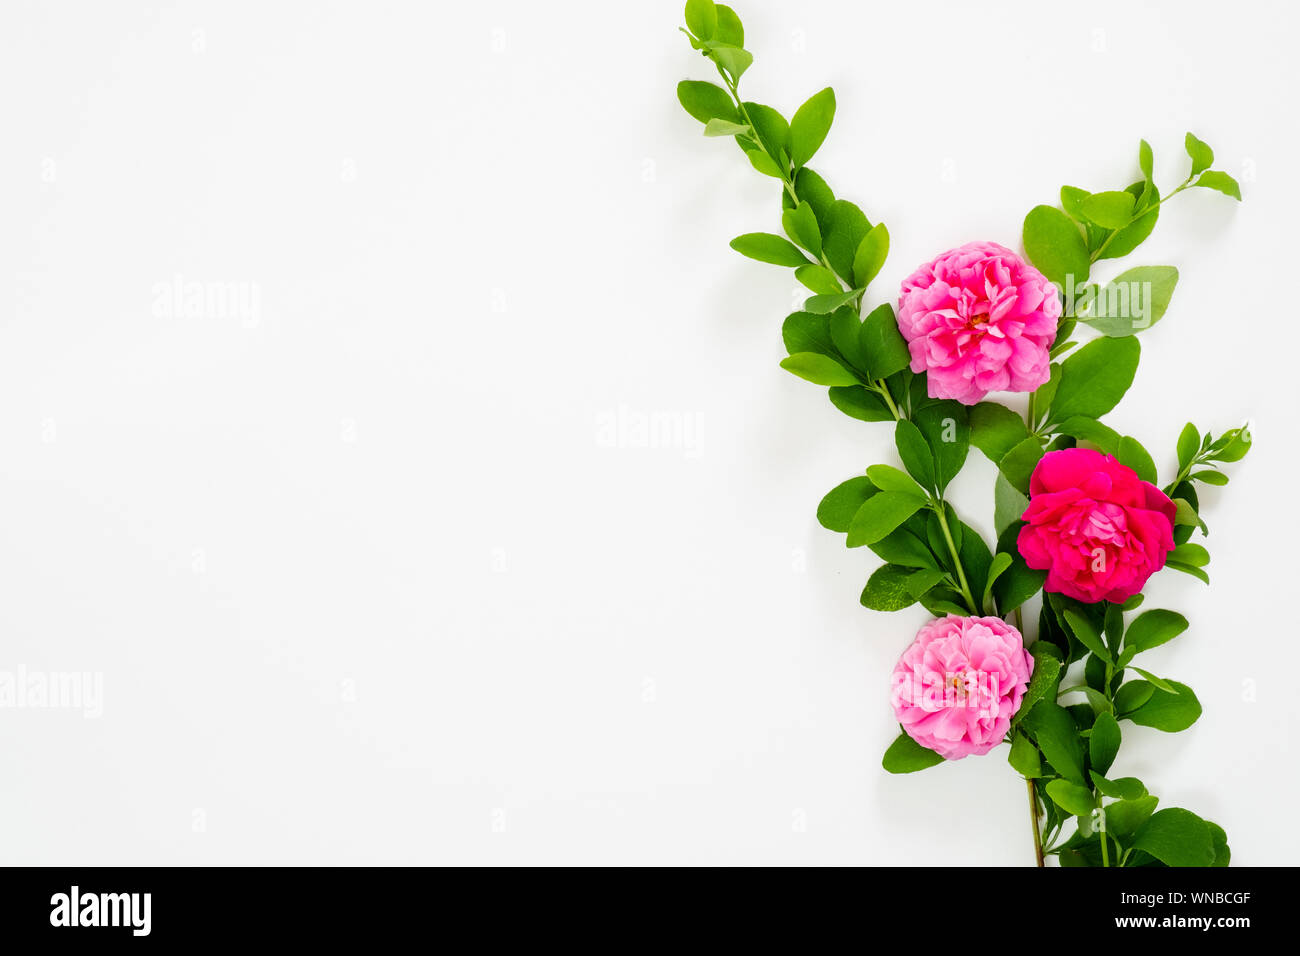 Appartamento laico, vista dall'alto mock up composizione floreale con rosa rosa Fiori su fondo bianco. Blog o social media hero modello di intestazione. Foto Stock